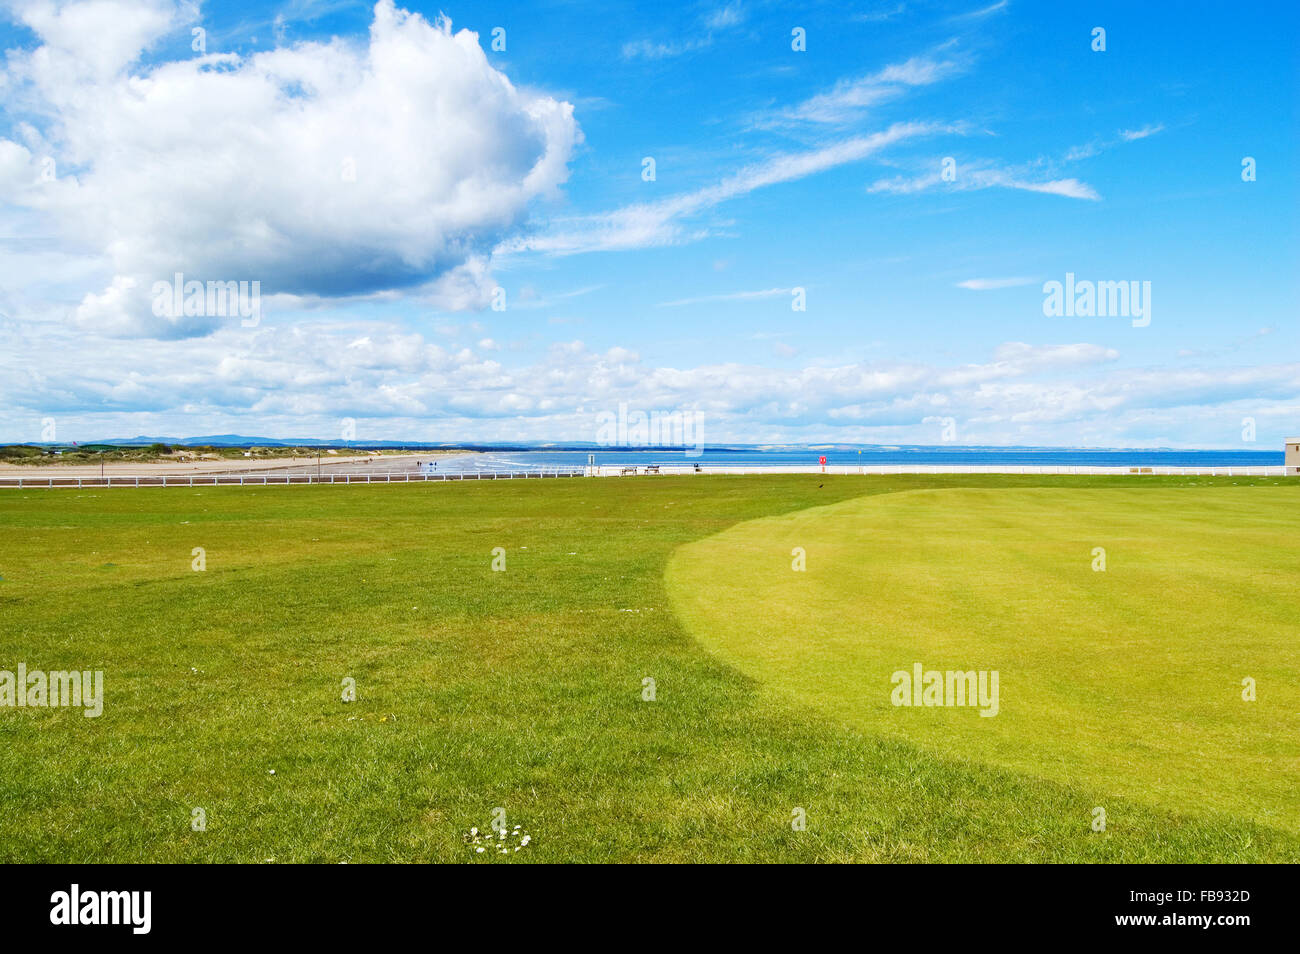 Golf Green St Andrews old course links, su sfondo West sands beach posizione filmato di carri di fuoco. Fife, Scozia, Euro Foto Stock